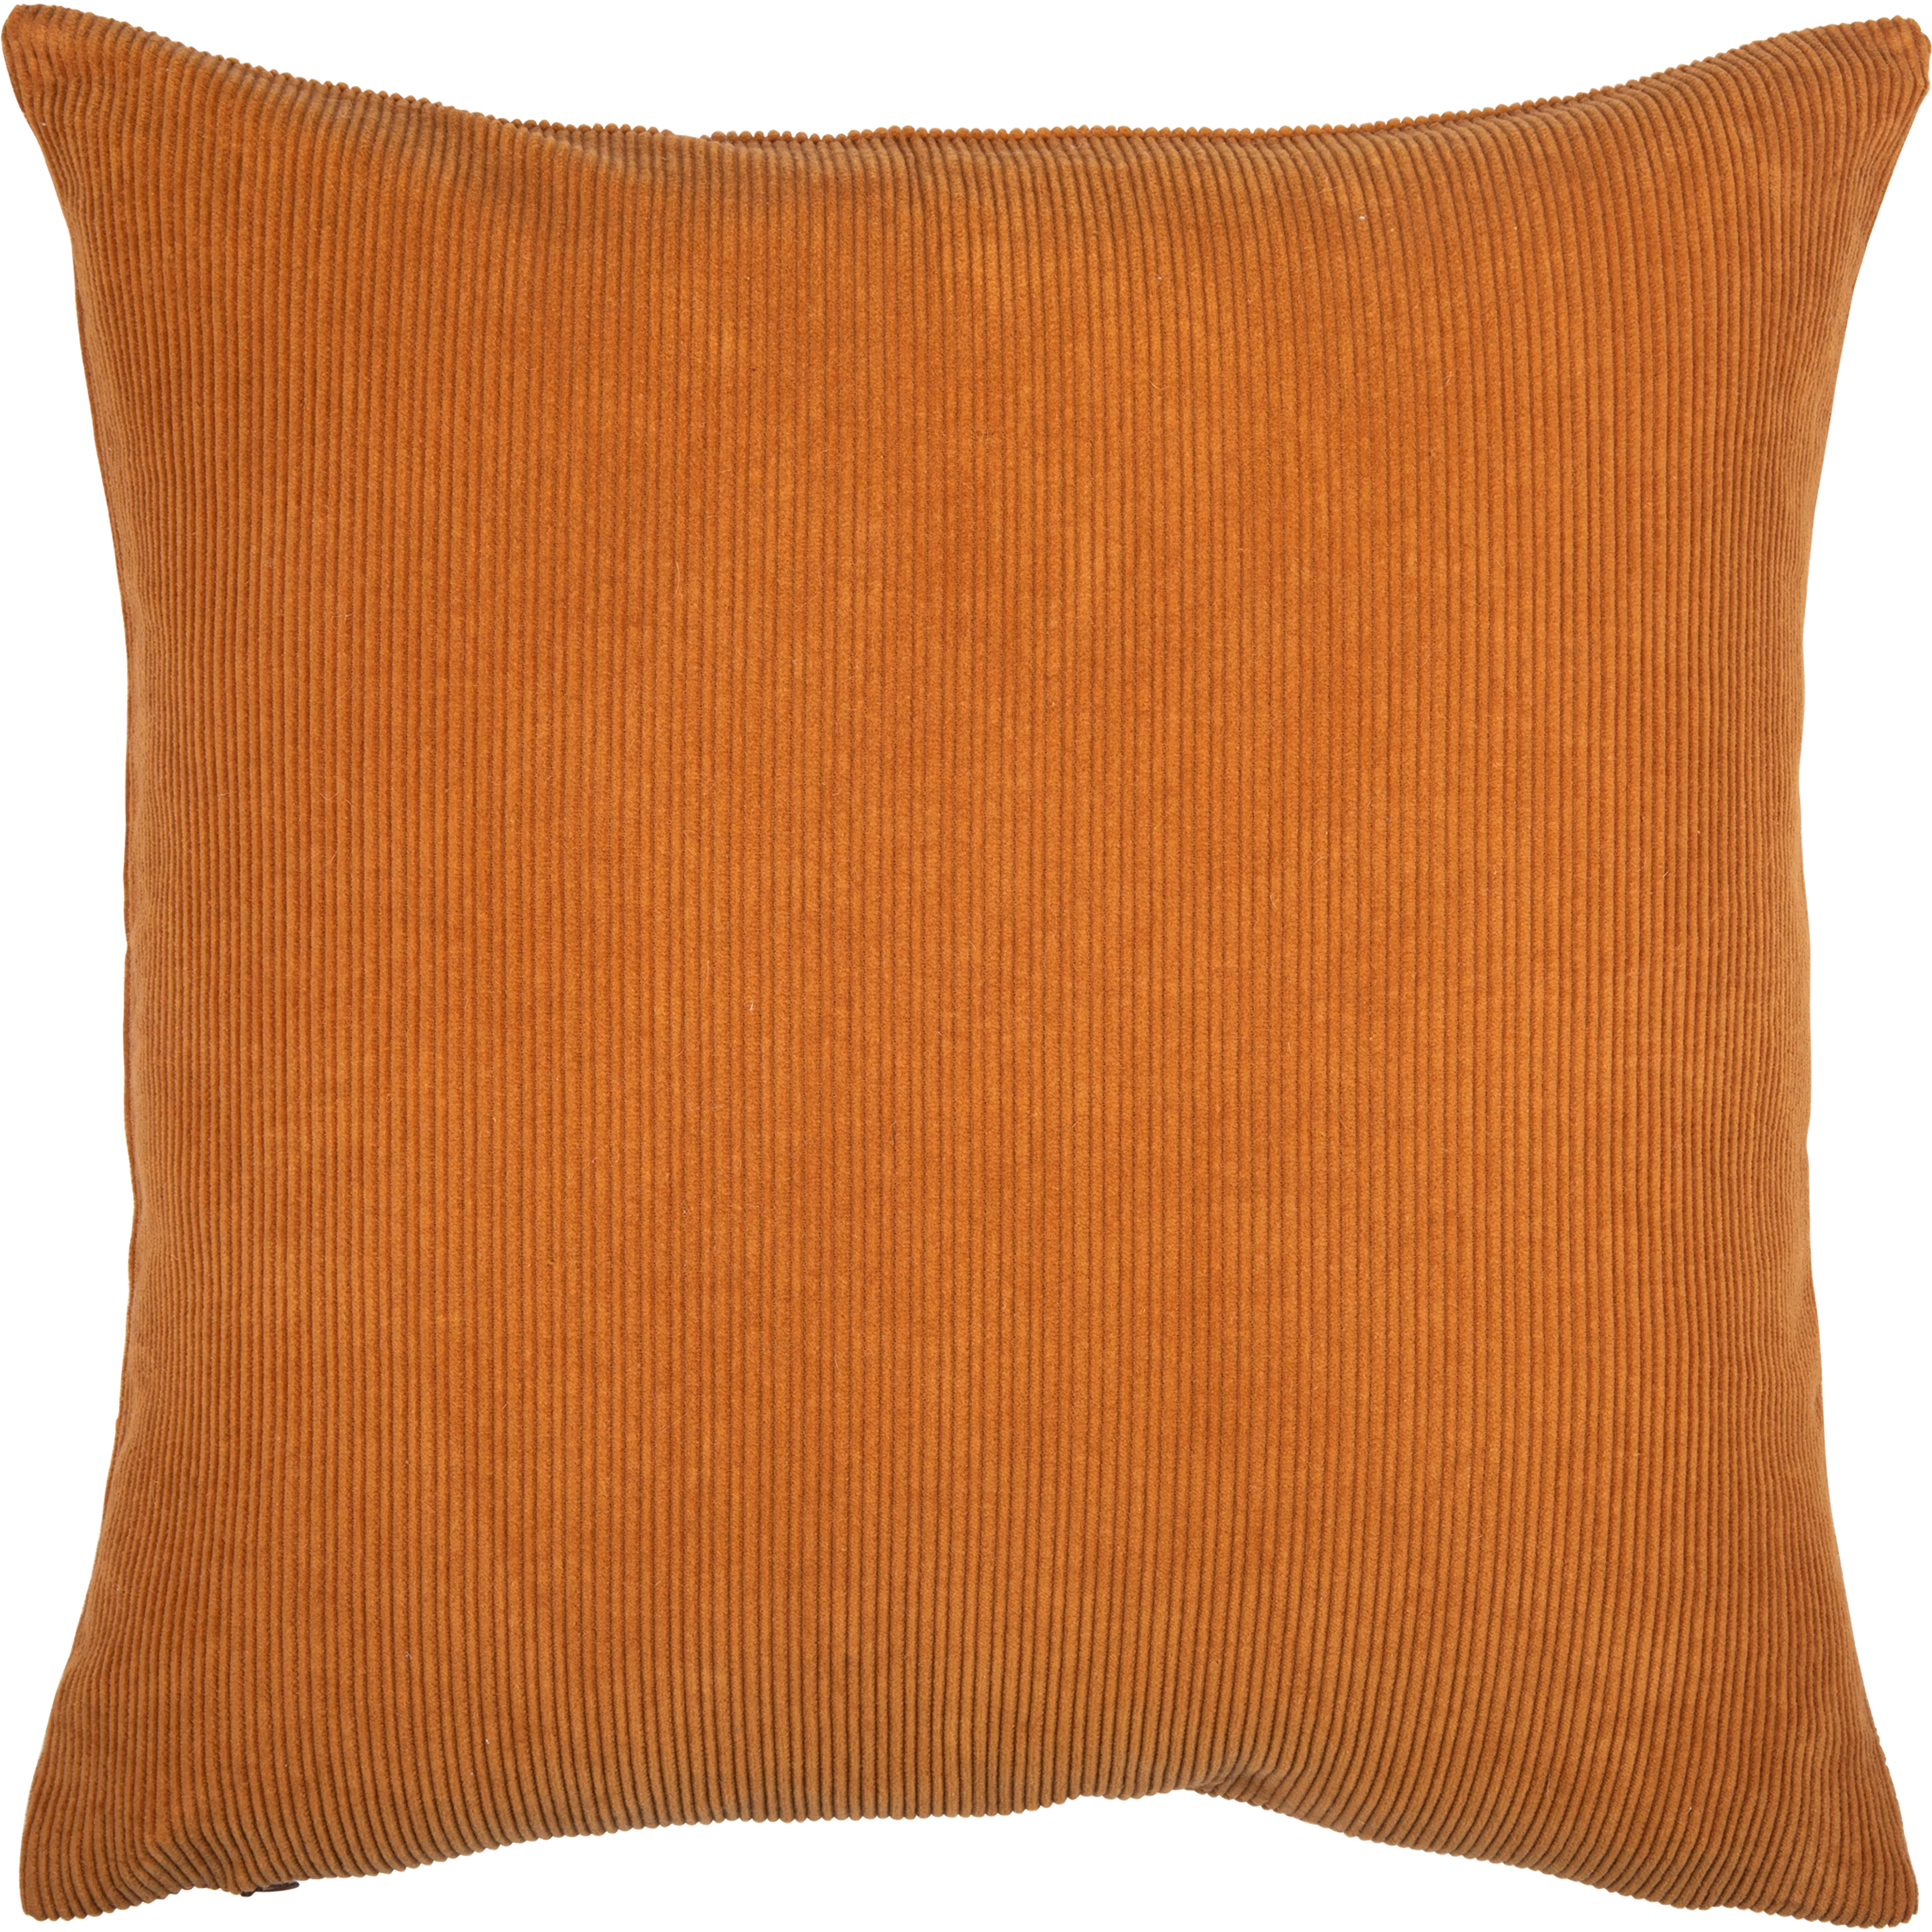 Pentik Laine tyynynpäällinen truskea, 45x45 cm